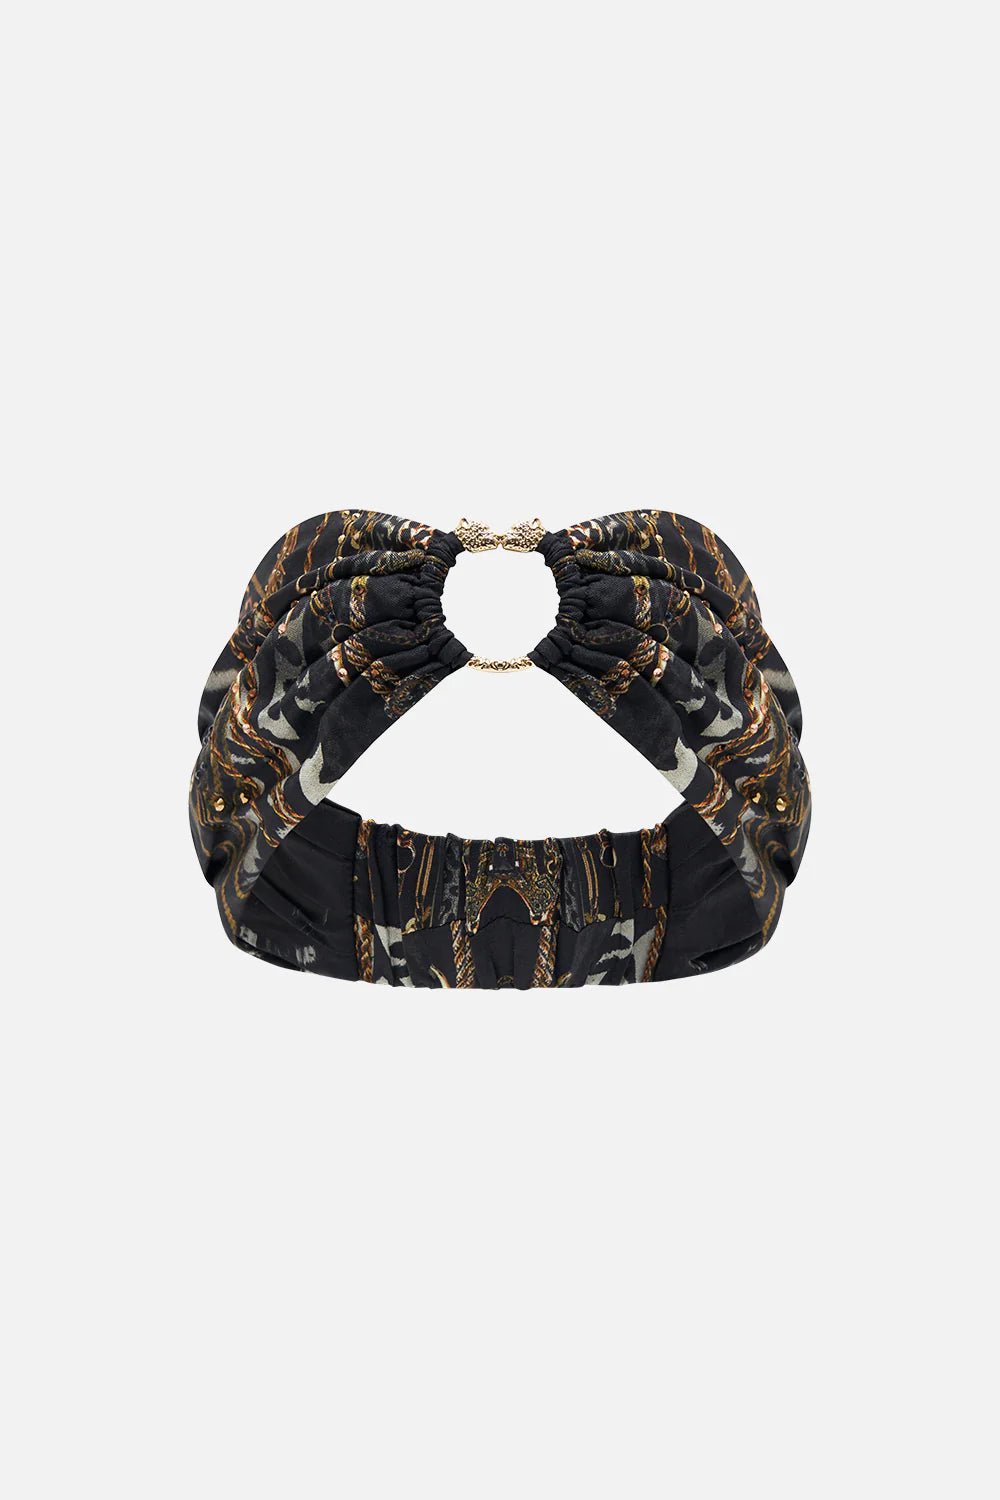 CAMILLA Ring Headband Untamed Royalty – Pinkhill